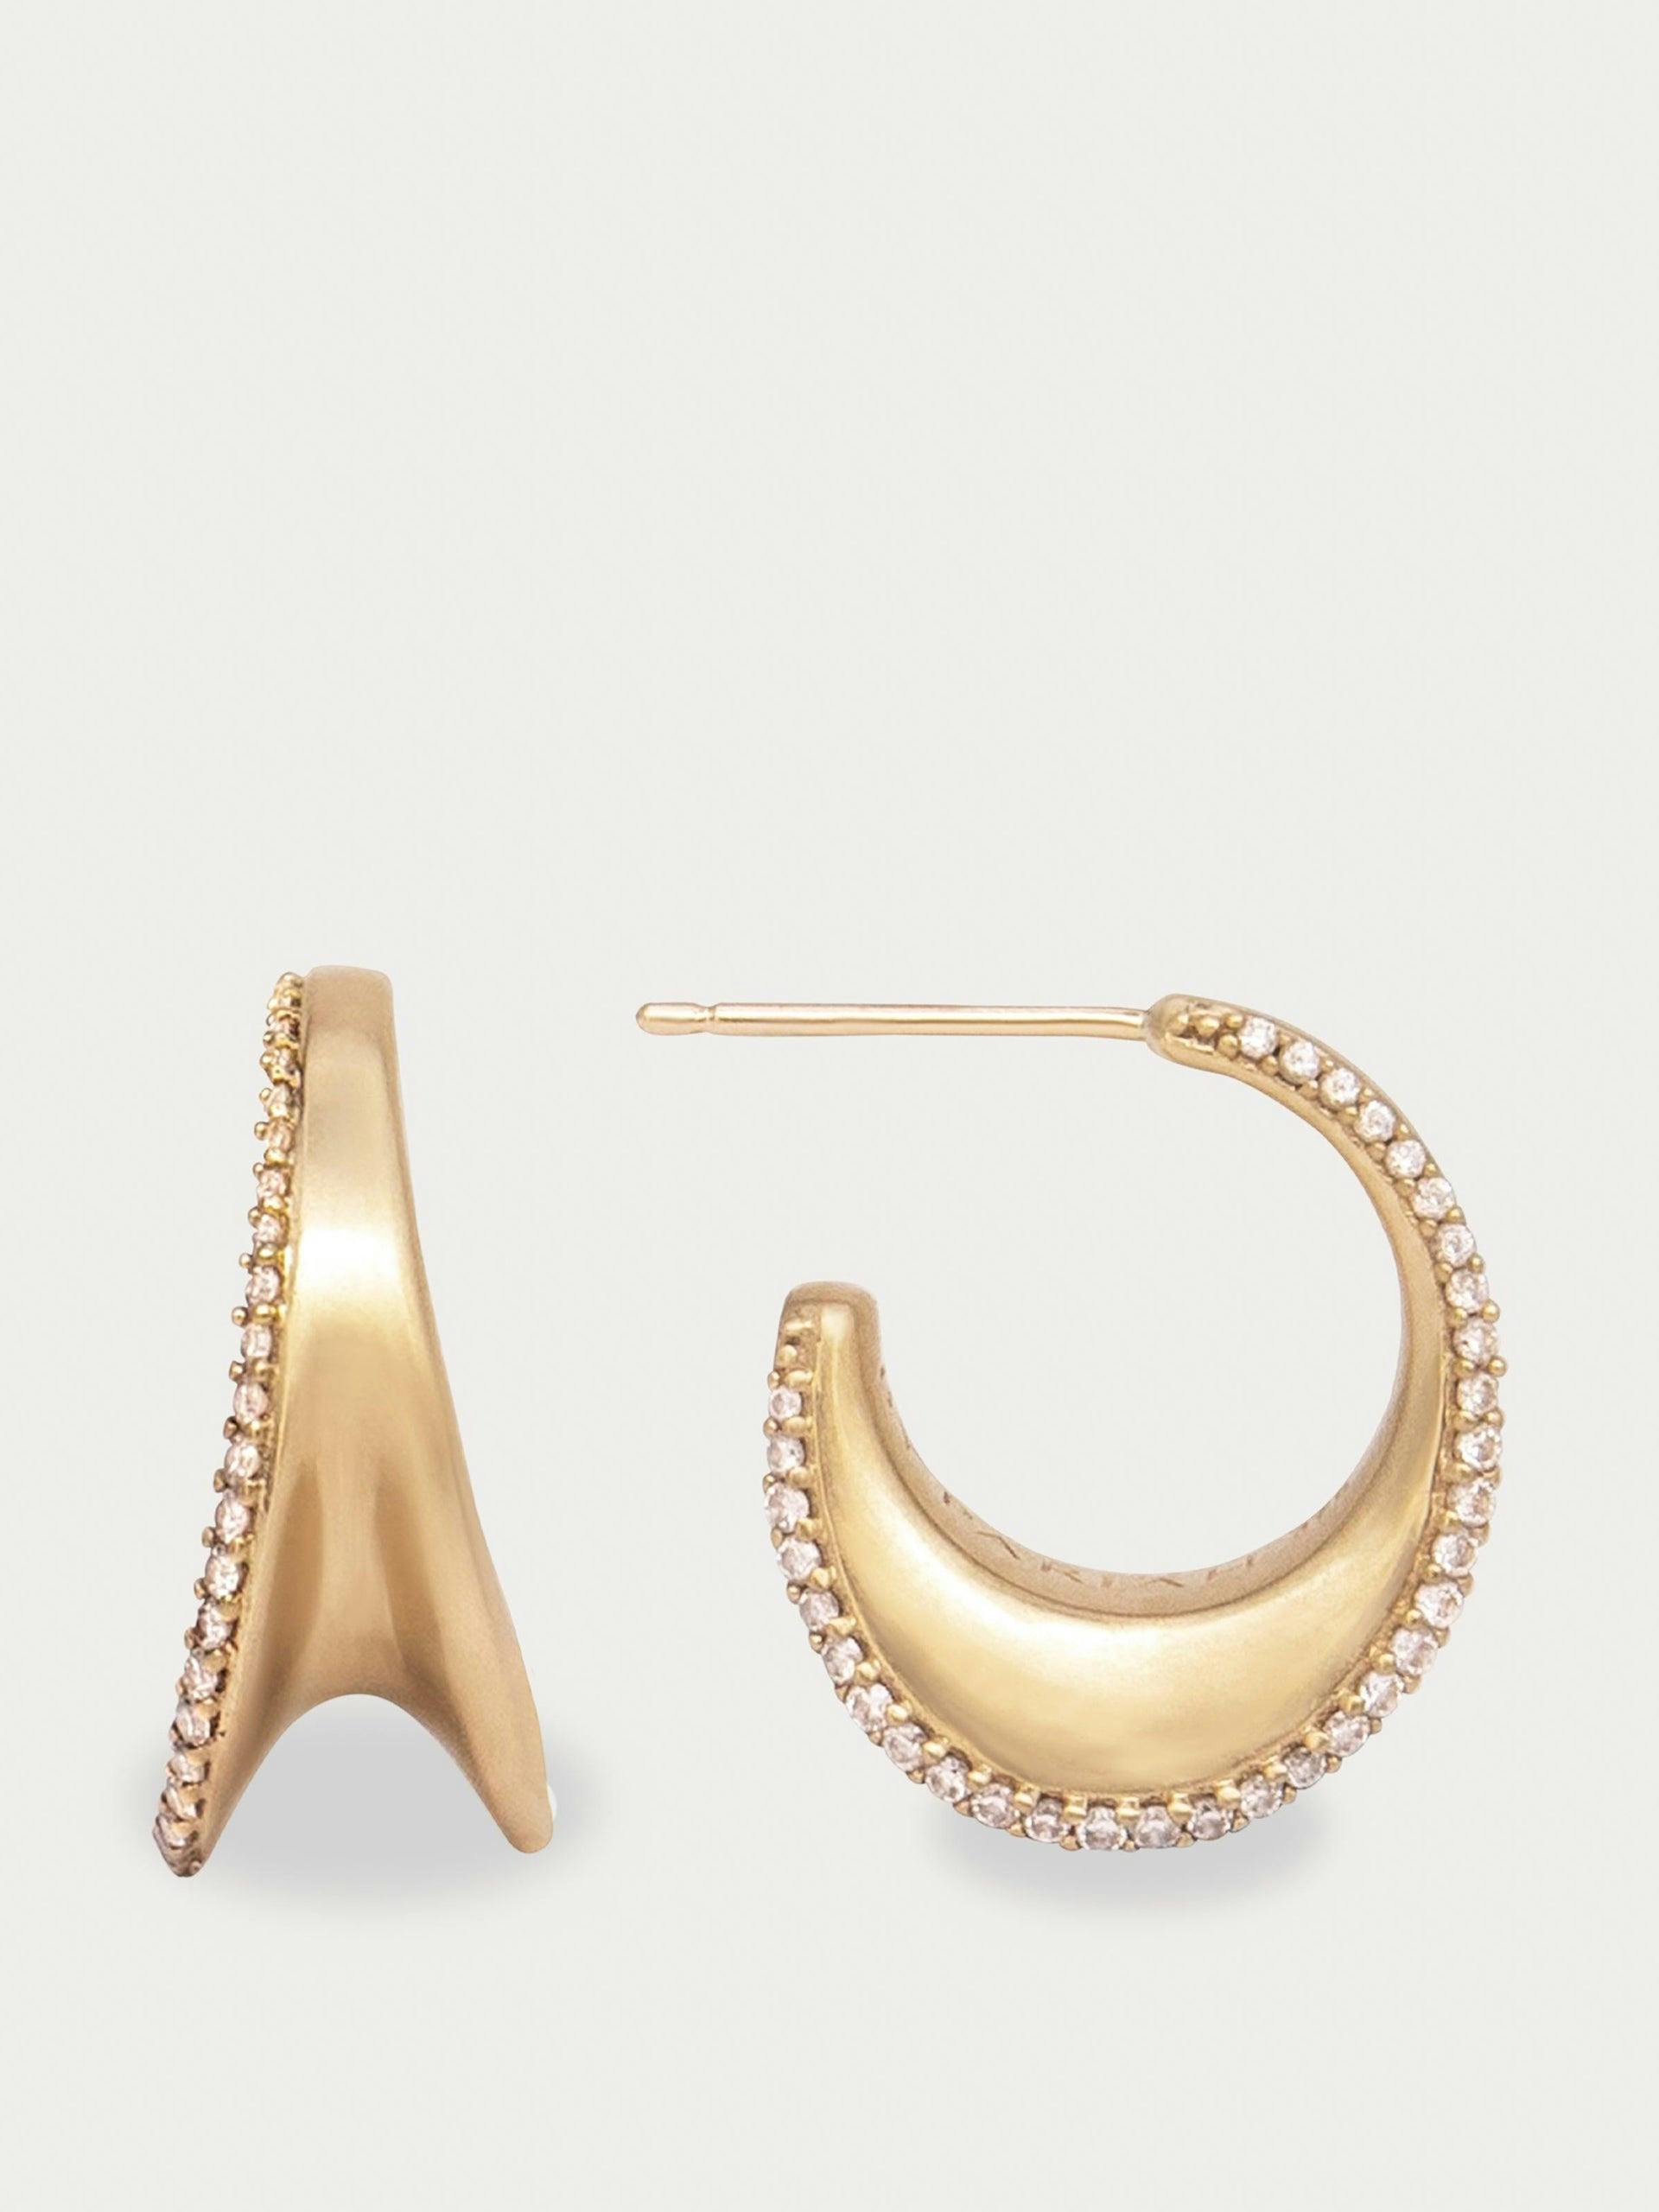 Cleave diamond and gold hoop earrings